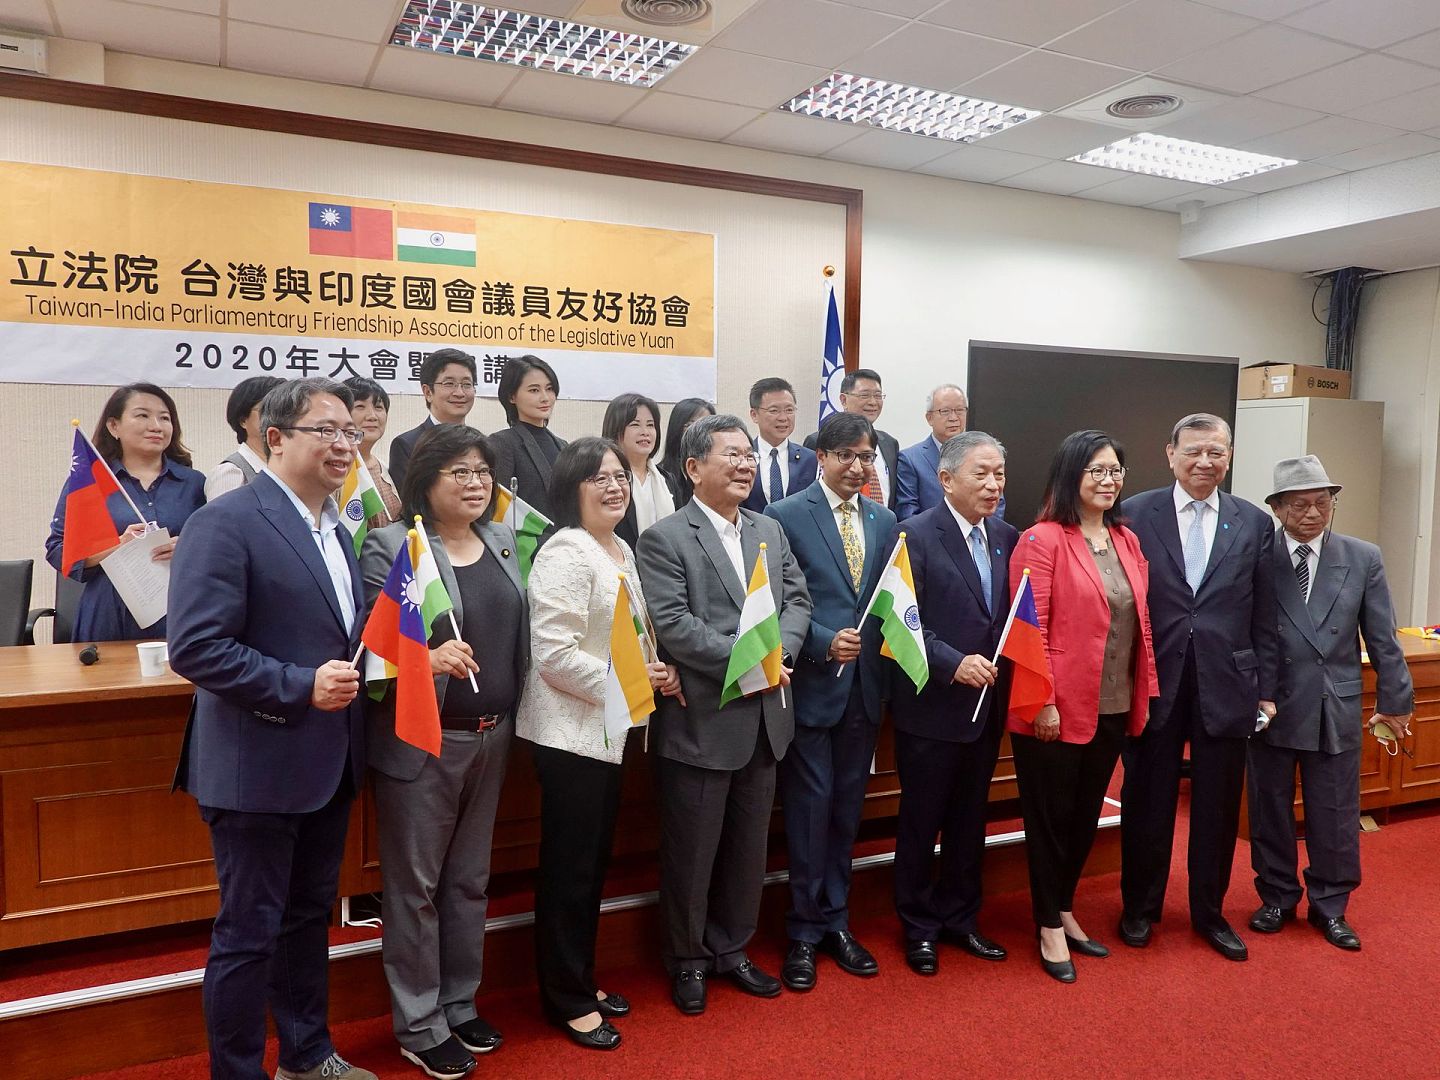 10月16日，台湾立法院举行“台湾与印度国会议员友好协会”大会暨演讲会。图为现场与会者合影。 （谭英瑛／多维新闻）